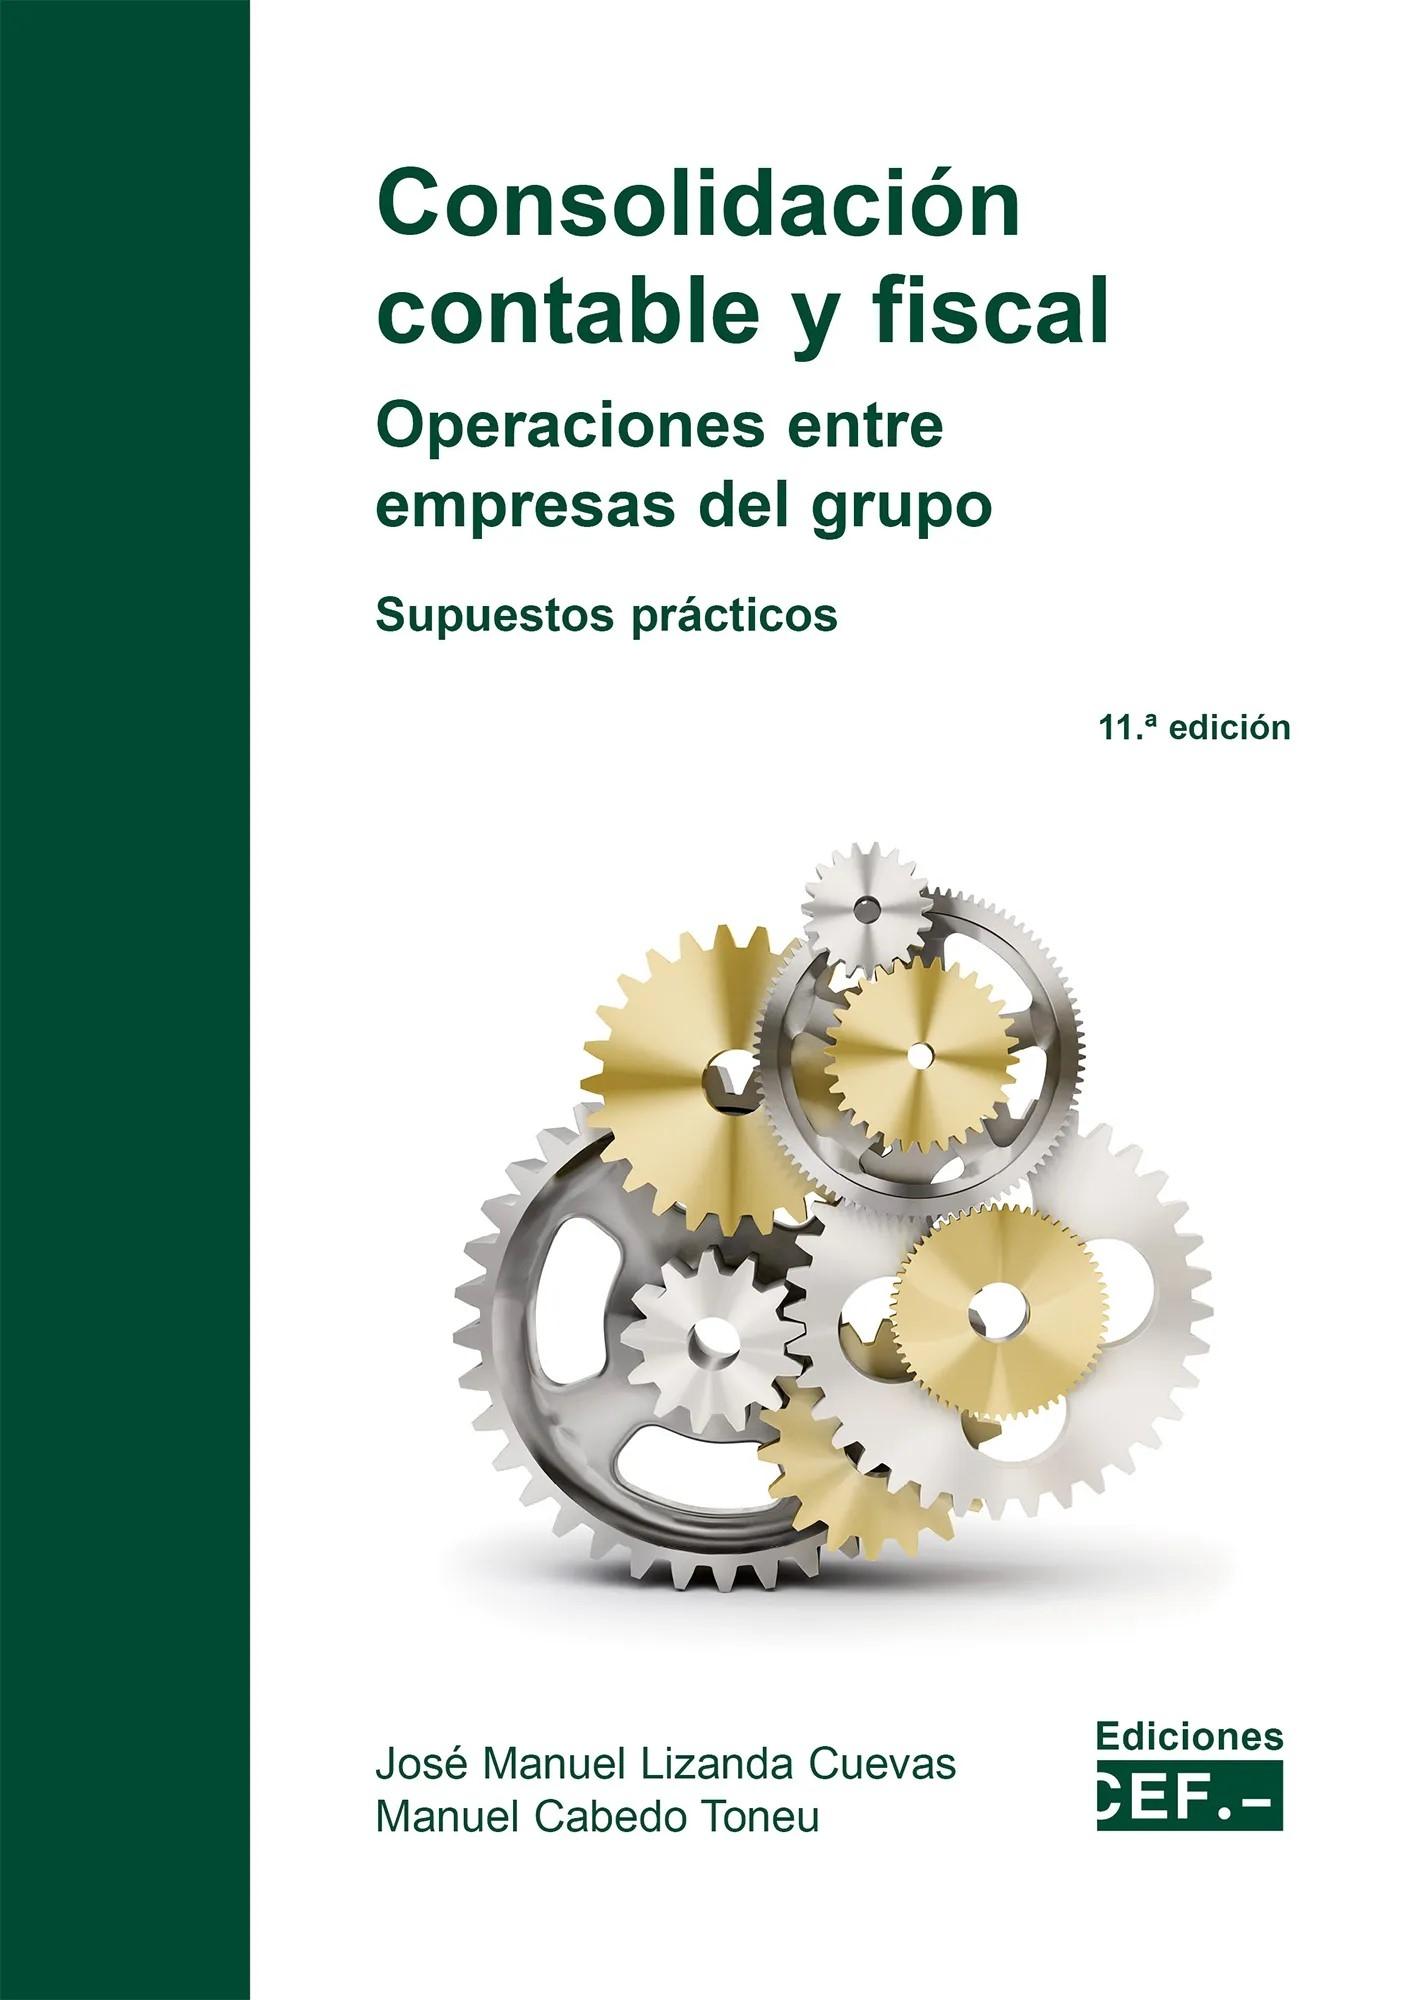 Consolidación contable y fiscal: operaciones entre empresas del grupo "Supuestos prácticos"